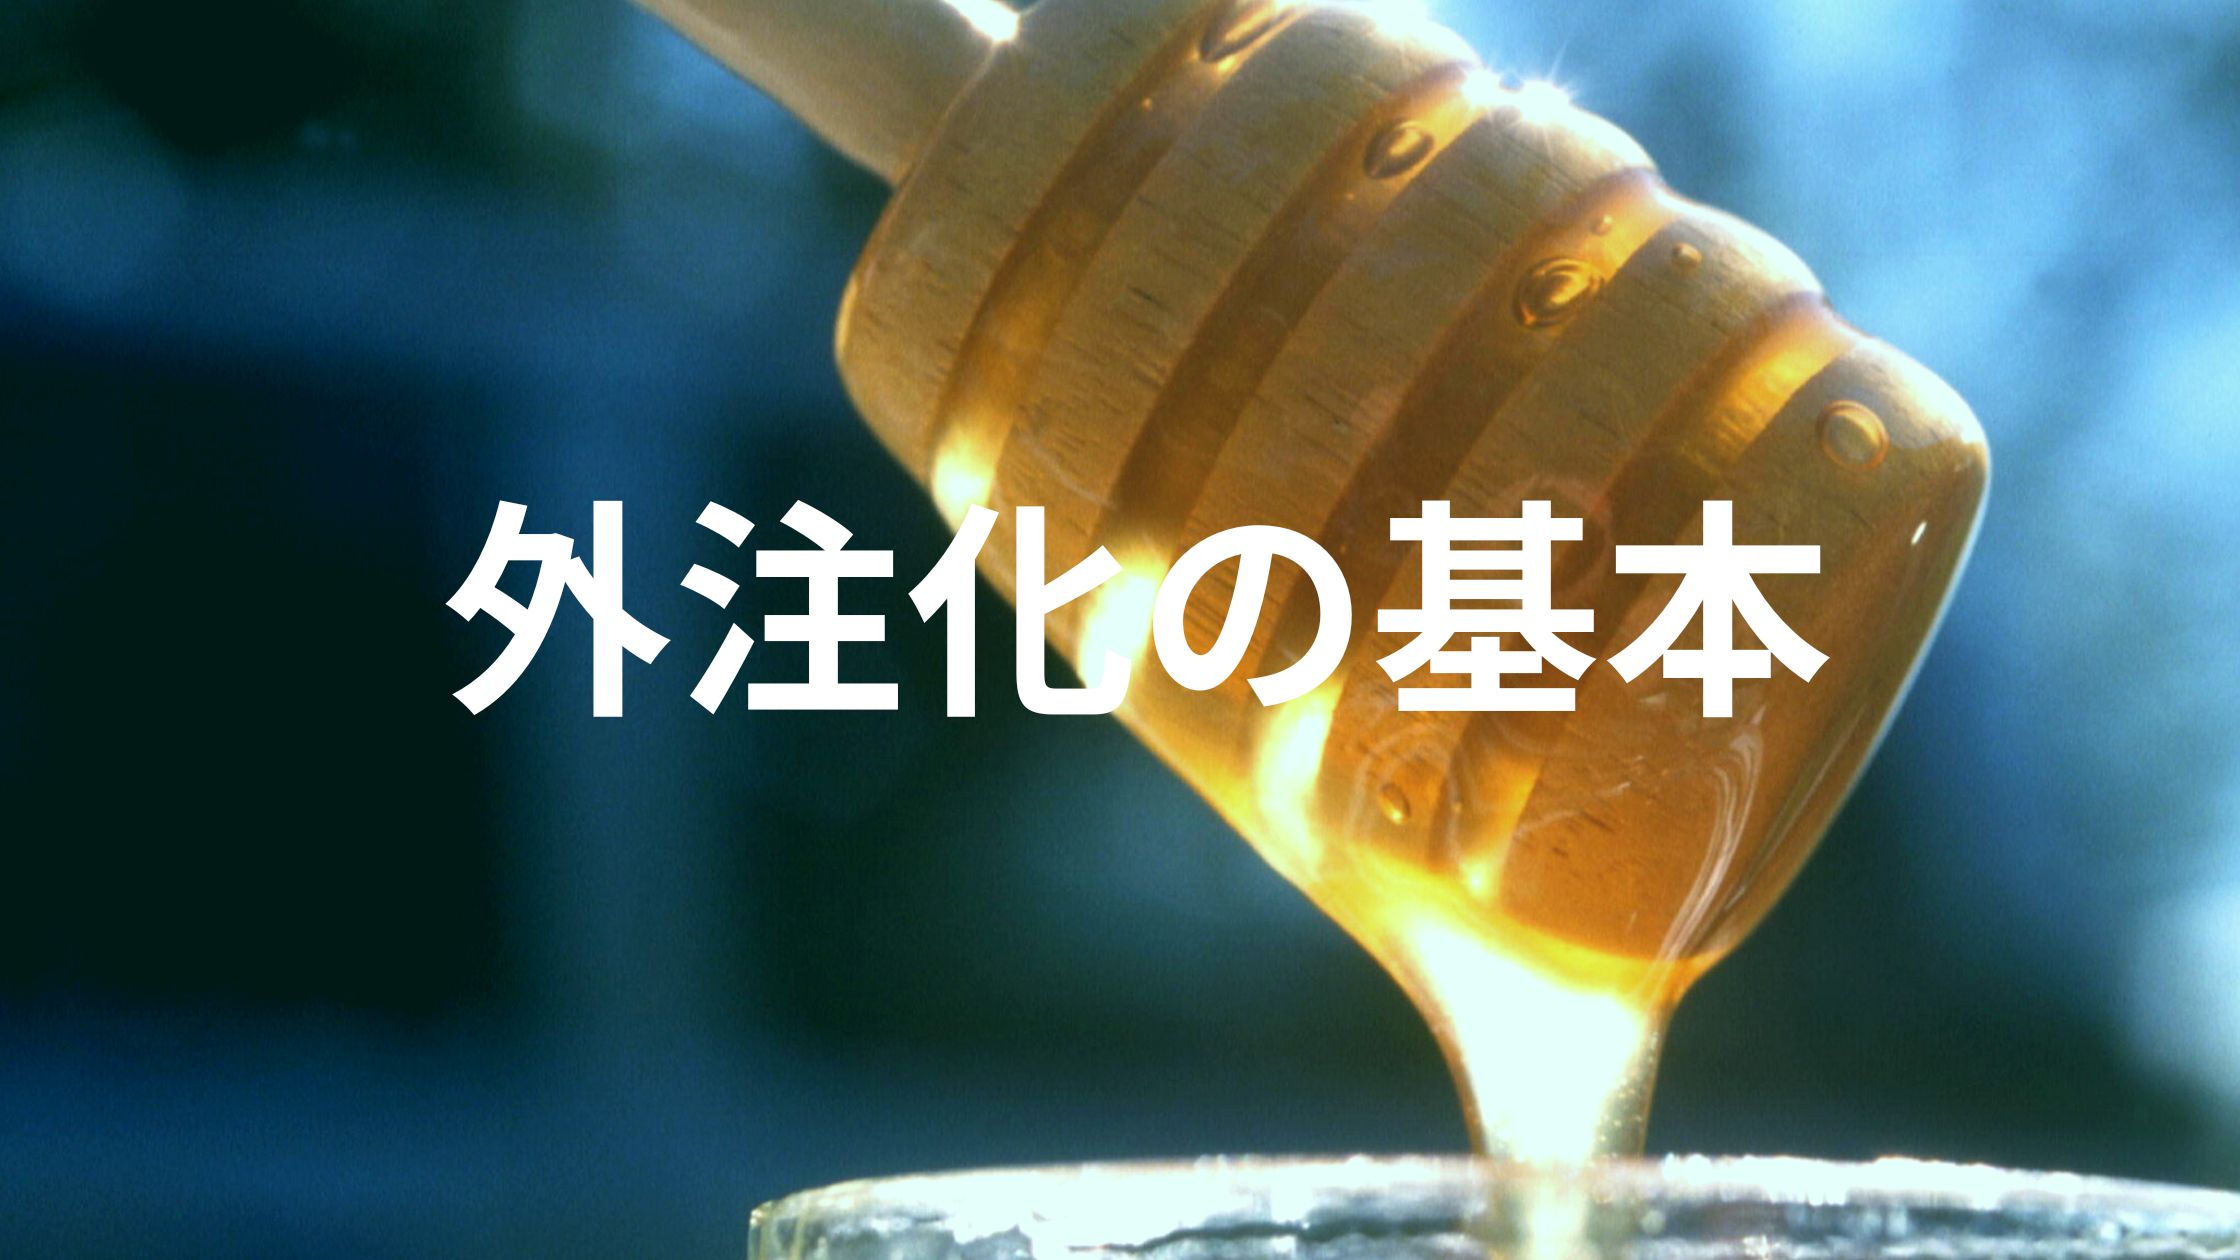 Honey Photo Blog Banner (1)